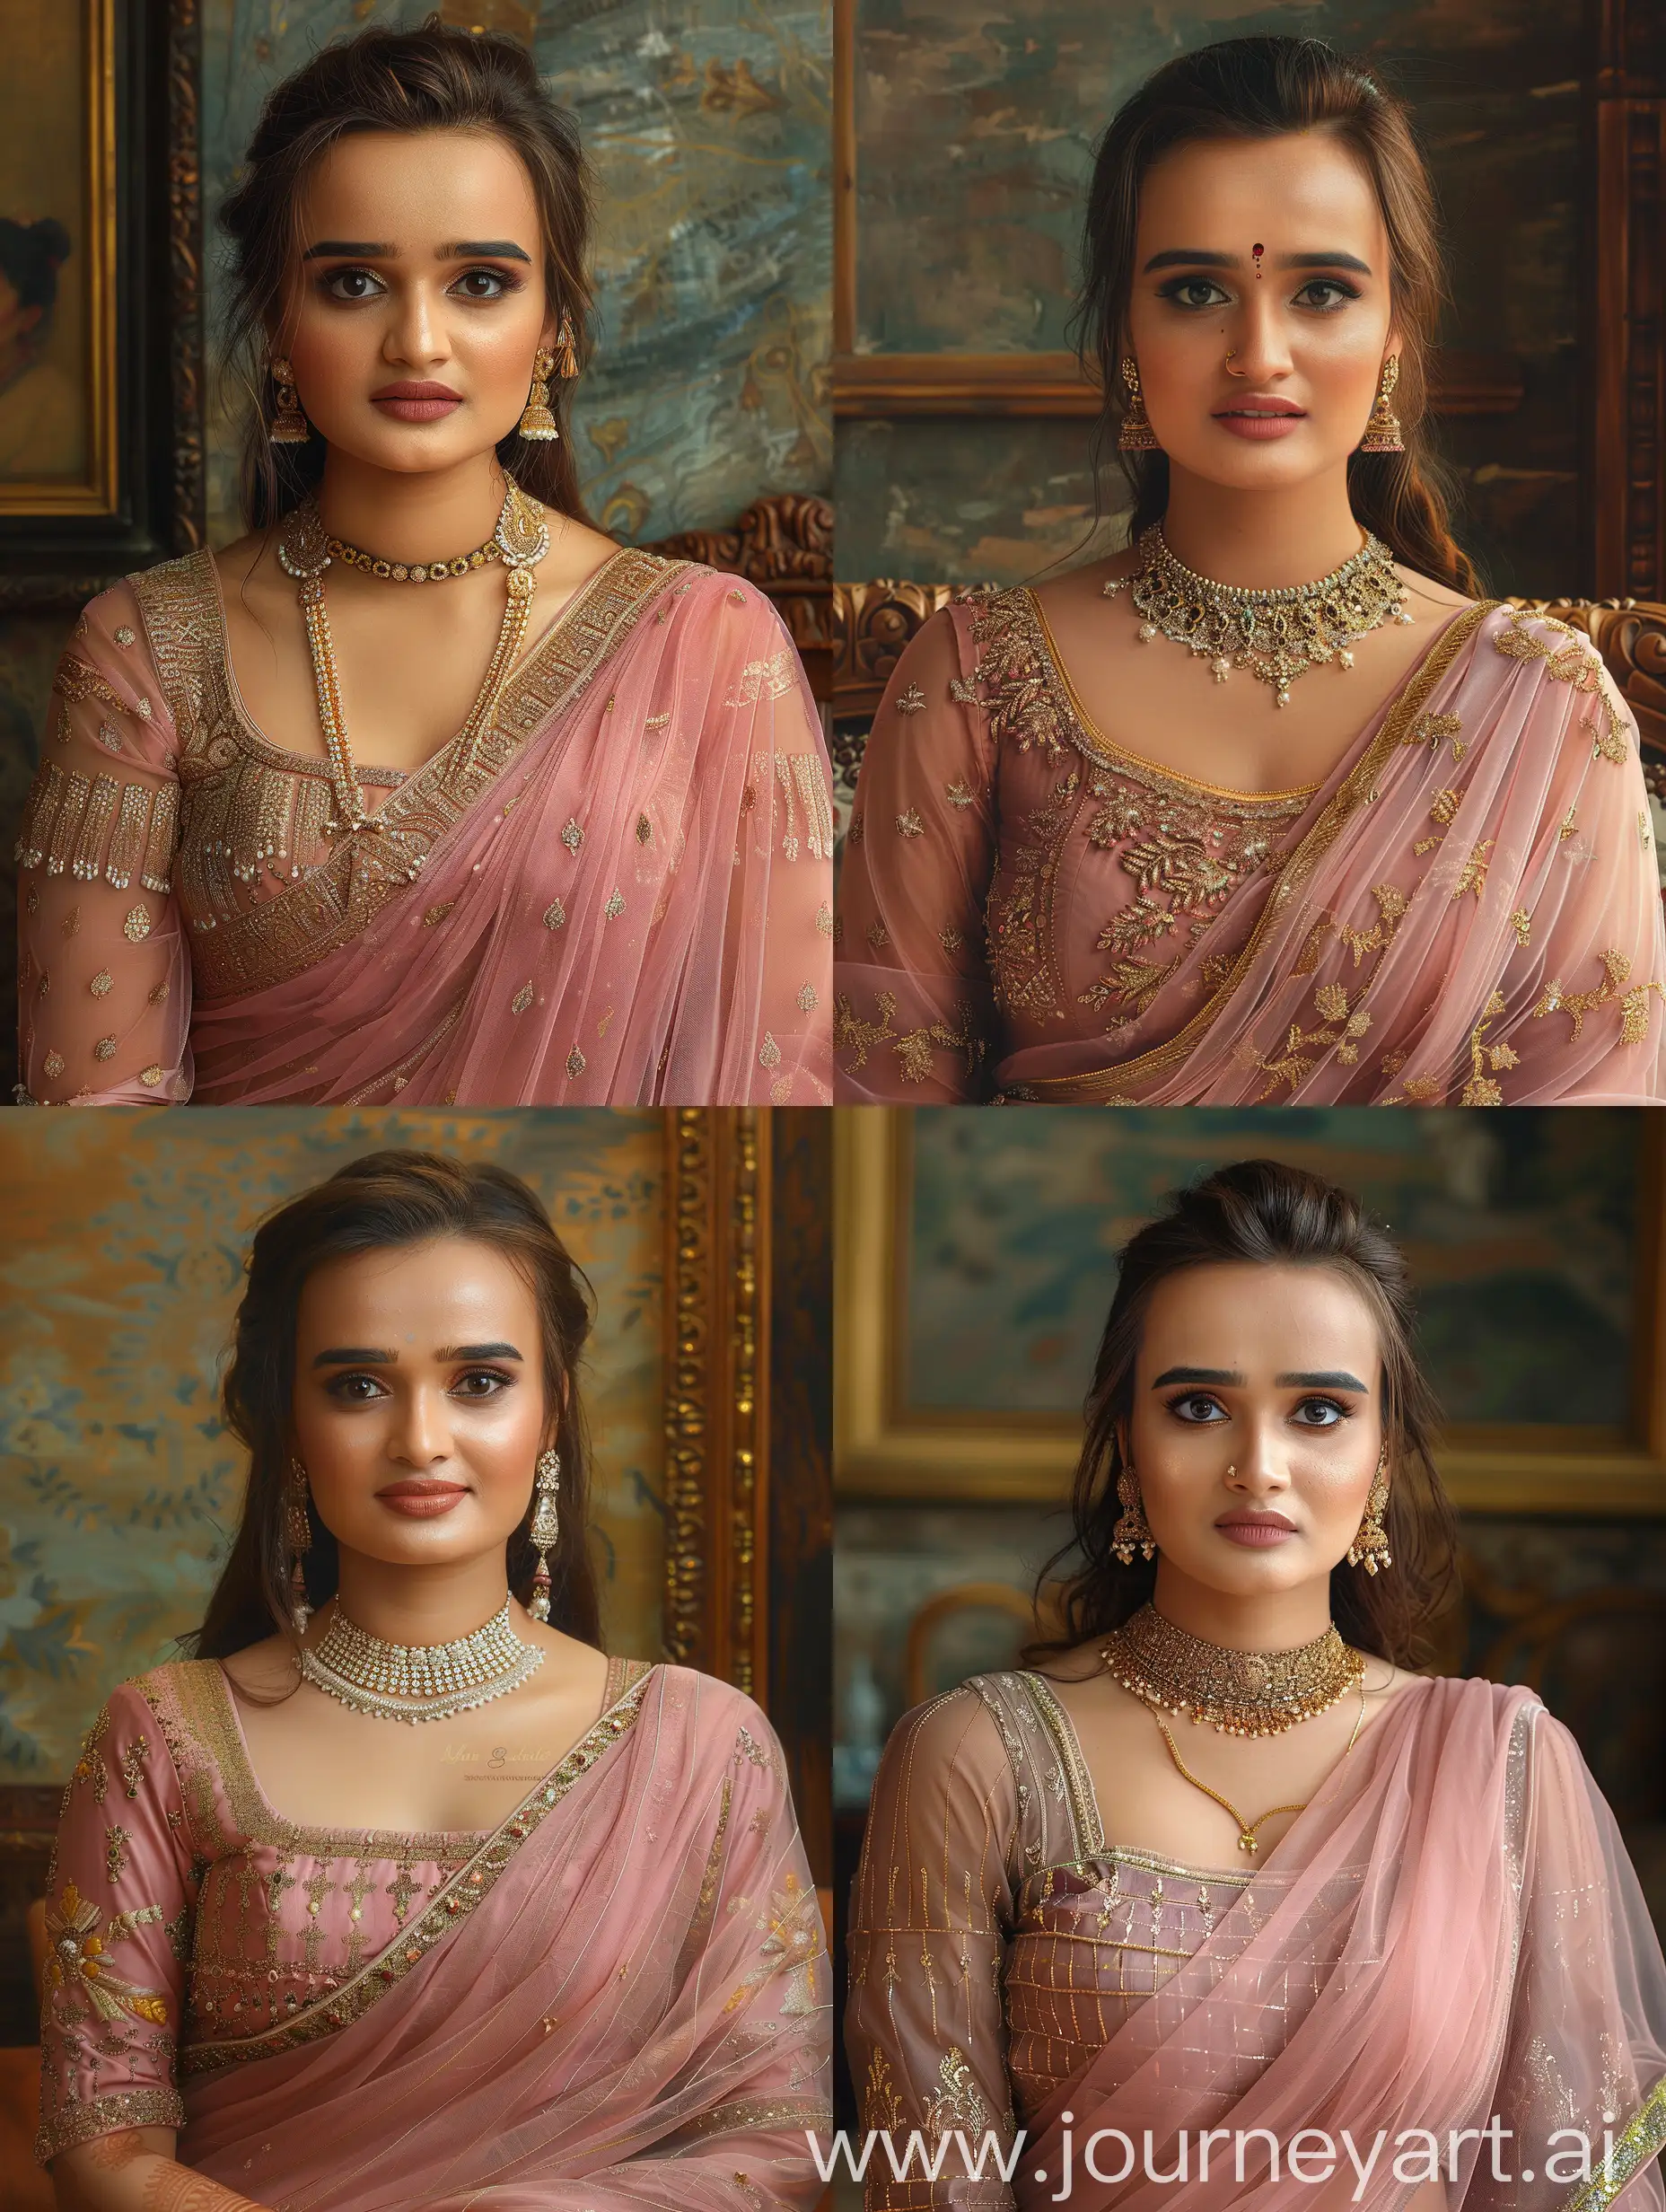 Exquisite-Indian-Sari-Portrait-in-Raja-Ravi-Varma-Style